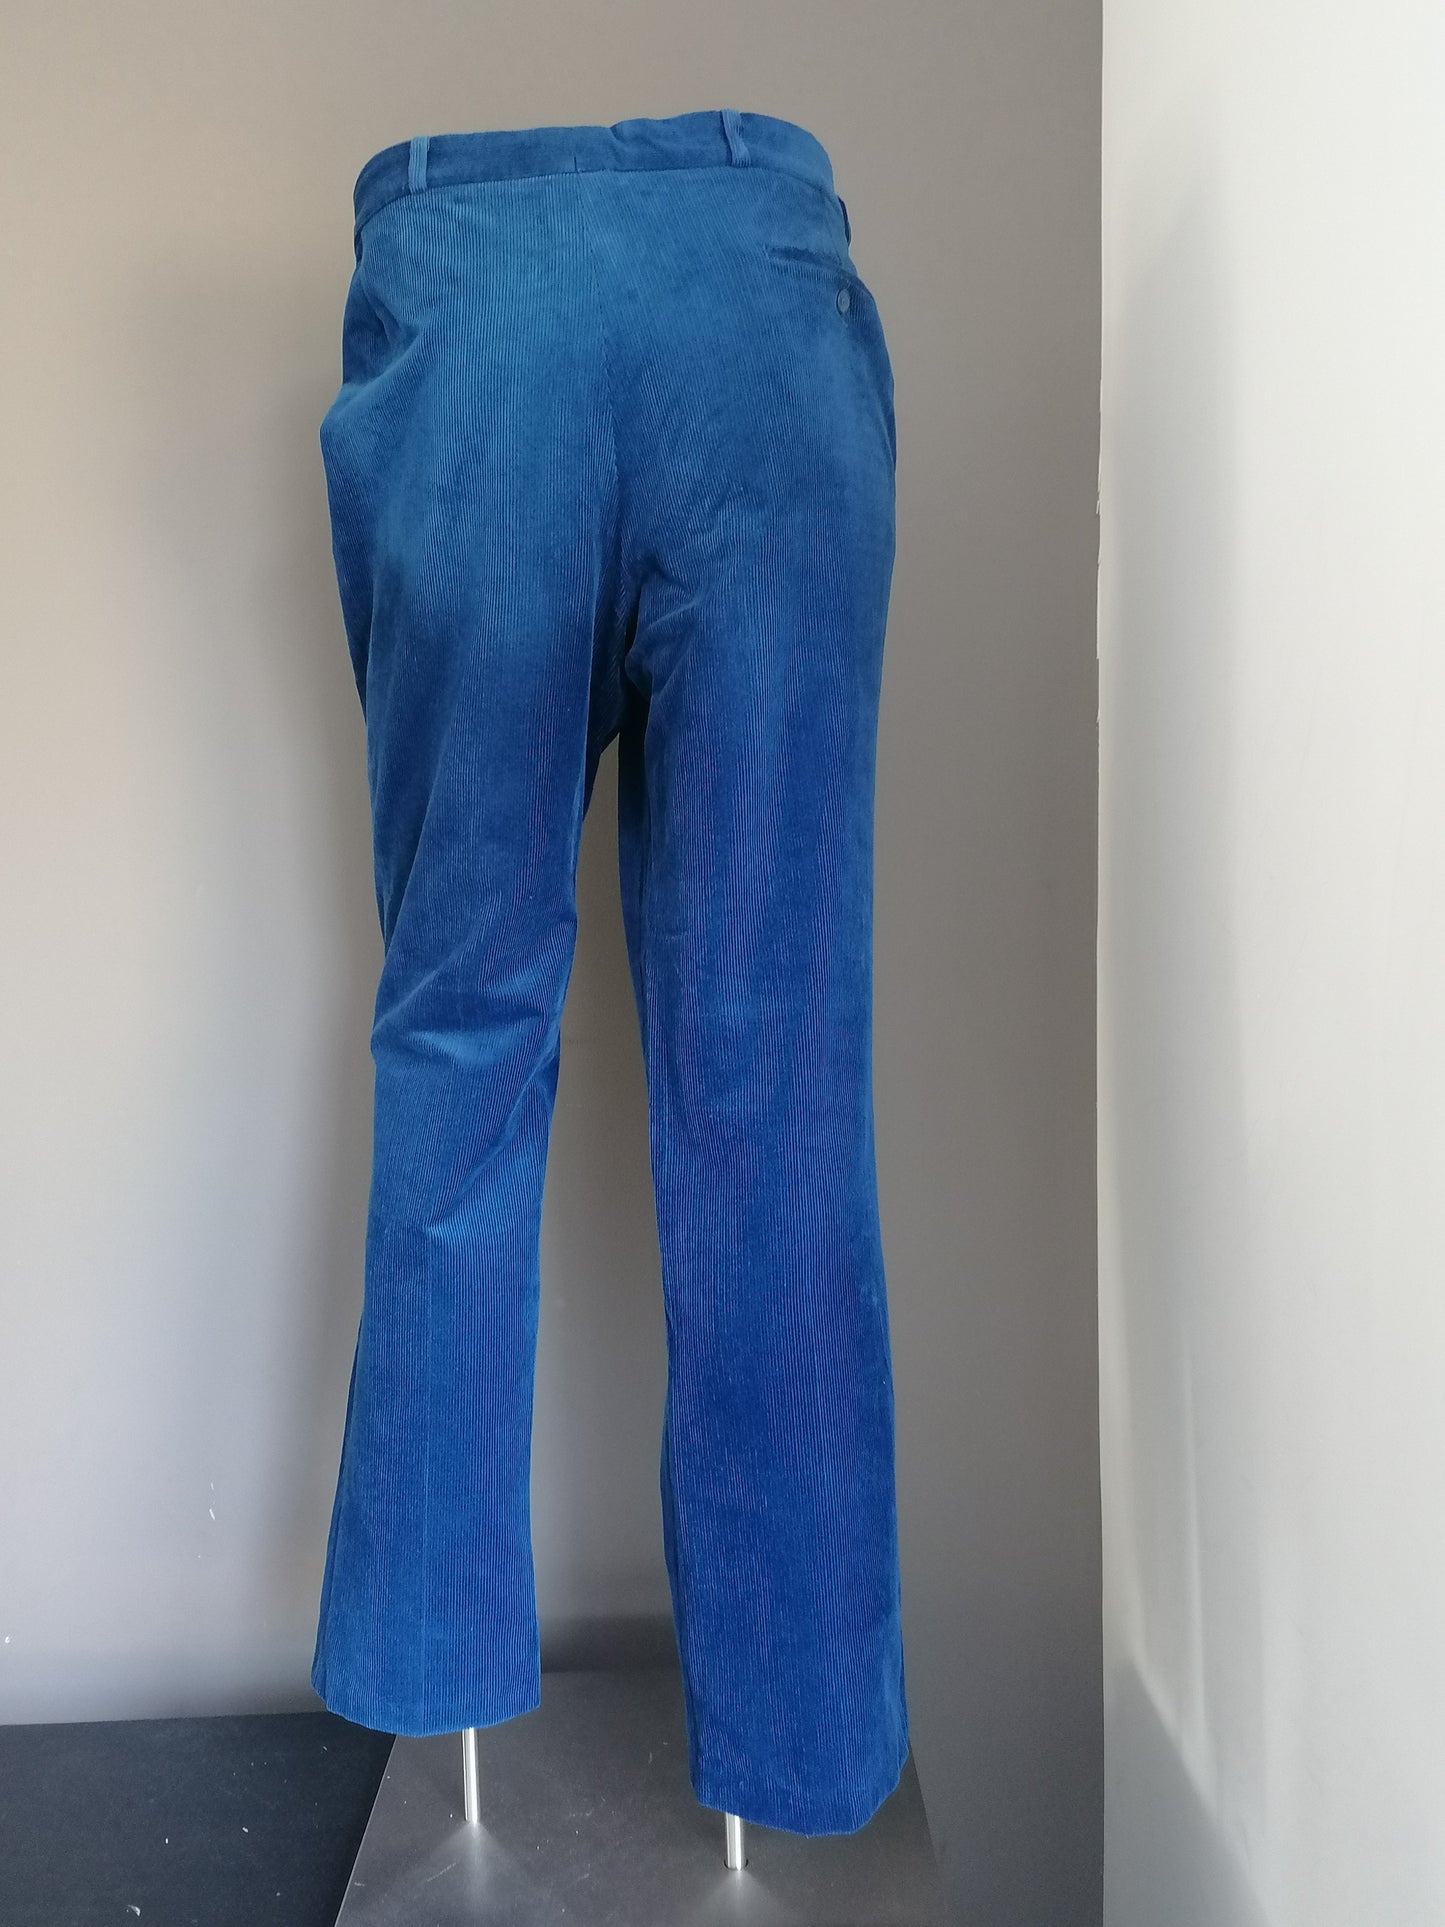 Komfort Stretch Rippenhosen / Hosen. Blau gefärbt. Größe 27 (54/l)